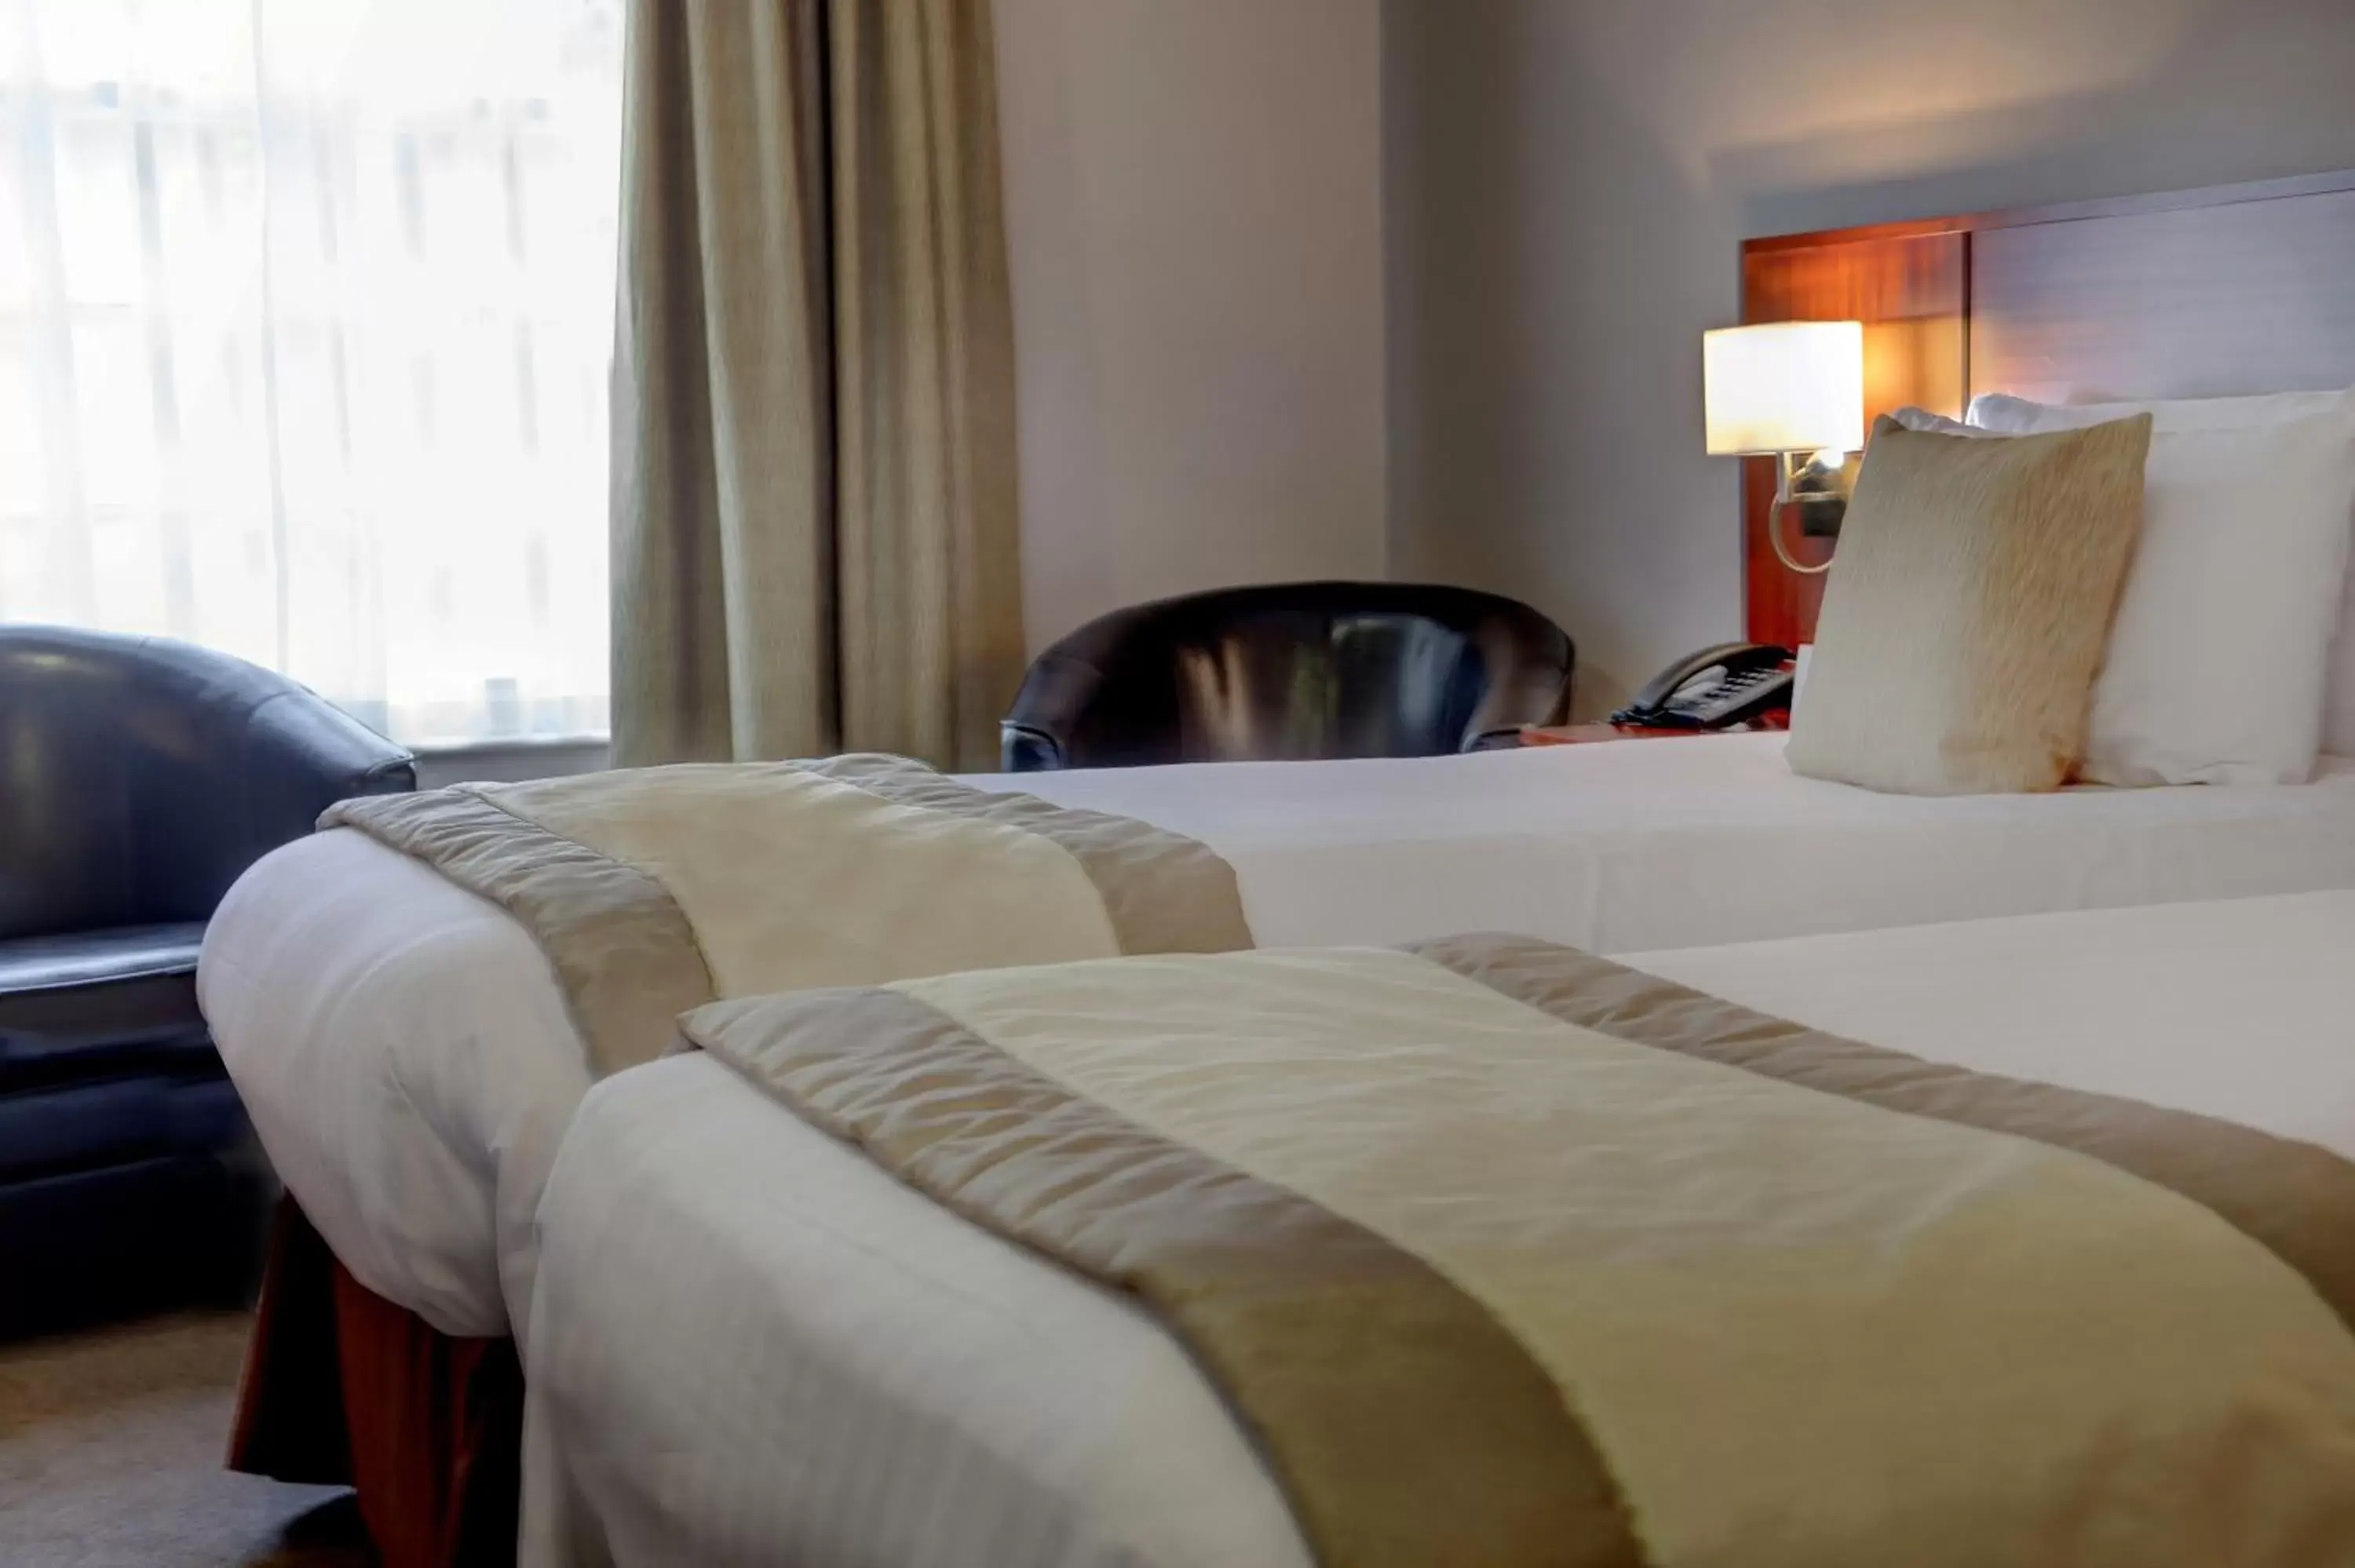 Bedroom, Room Photo in Best Western Plus West Retford Hotel